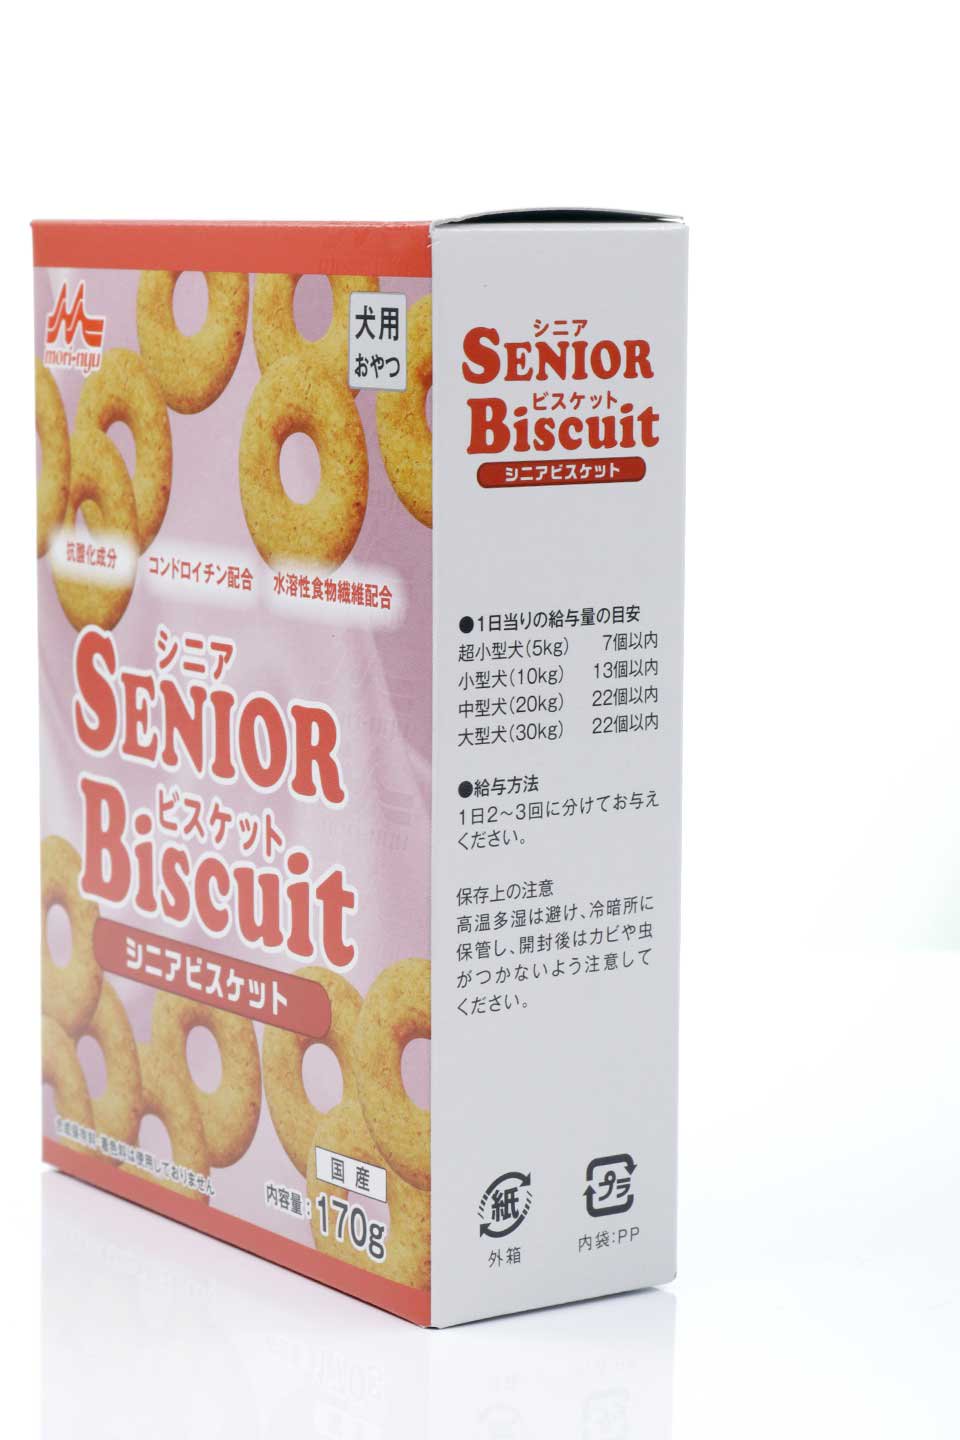 Senior Biscuit シニアビスケット